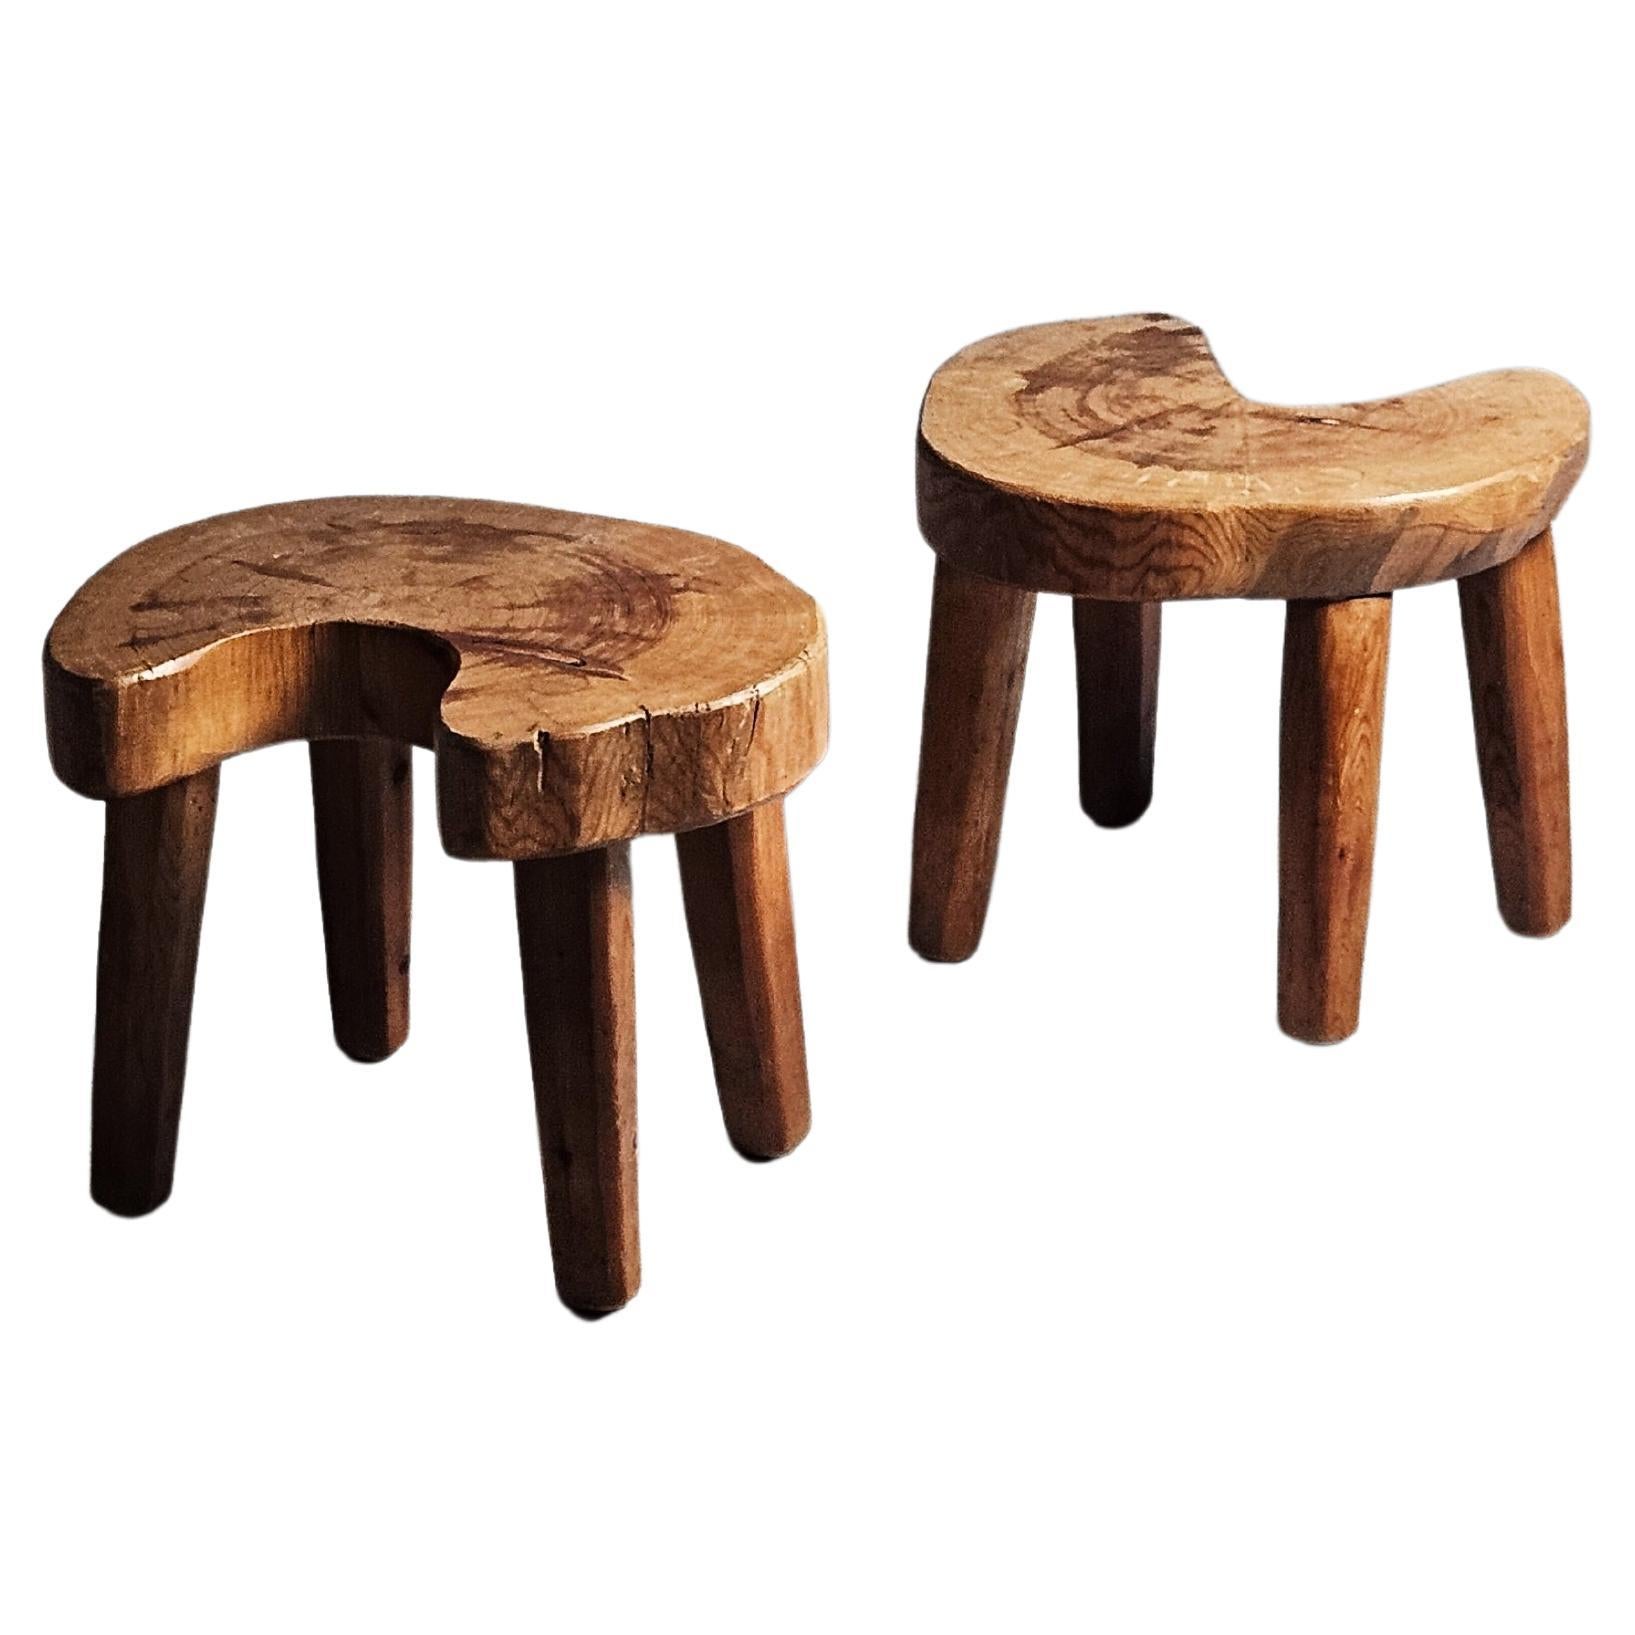 Unique primitive Swedish pine stools